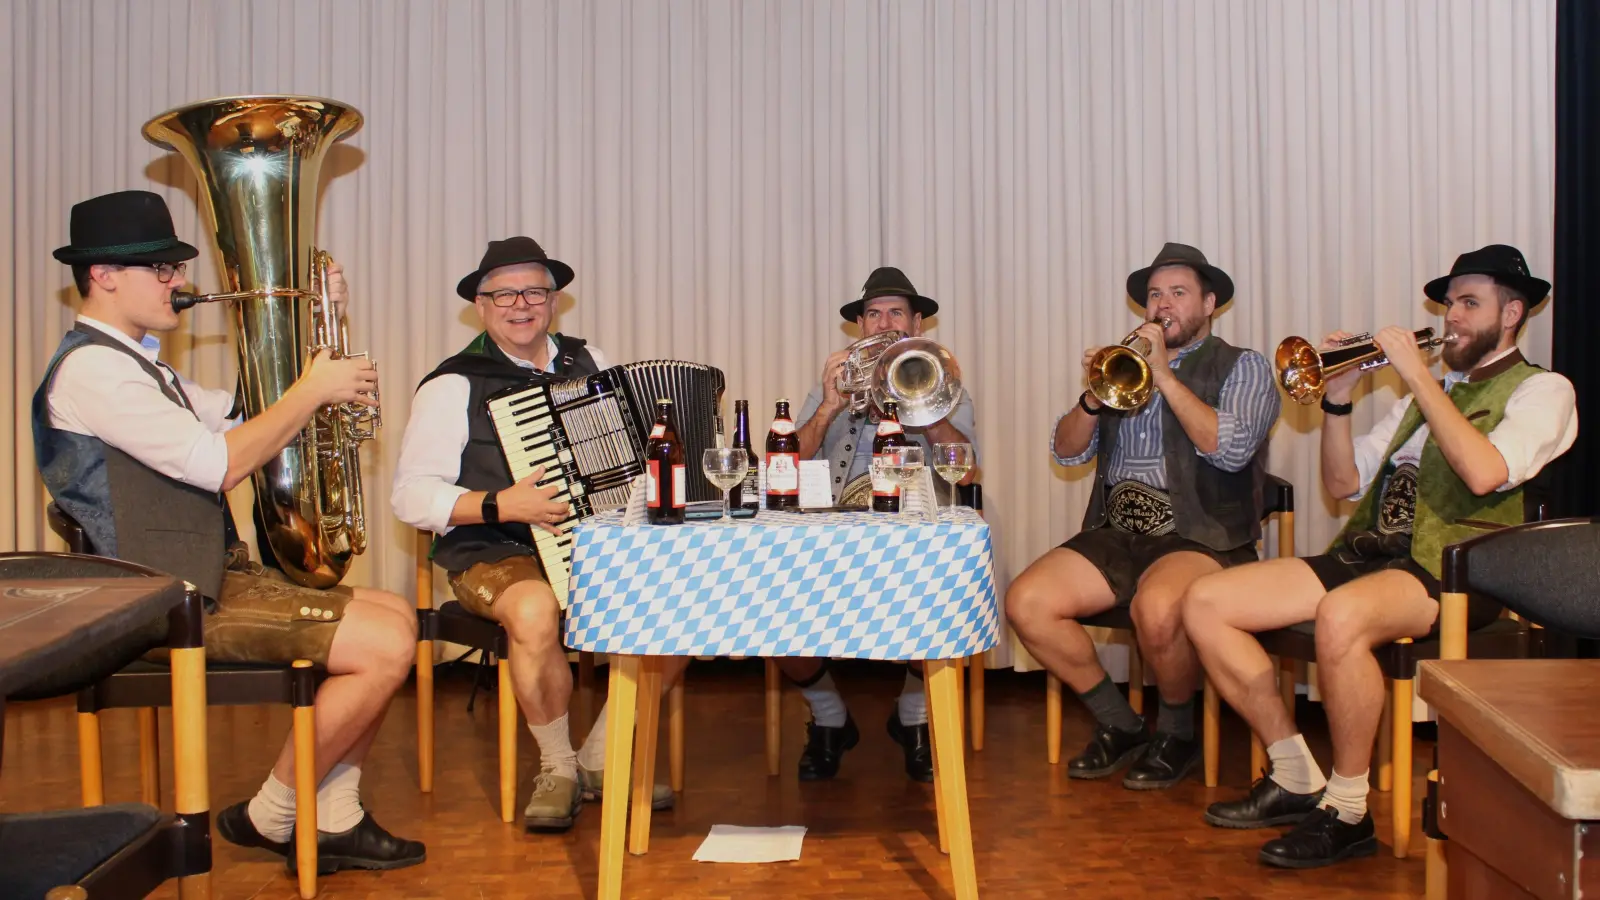 <b>Großartige Volksmusikgruppen,</b> wie die Wirtshausmusikanten aus Brixlegg, sorgten beim bayerischen Hoagarten in Aichach für einen gelungenen musikalischen Abend. <br> (Fotos: Xaver Ostermayr)